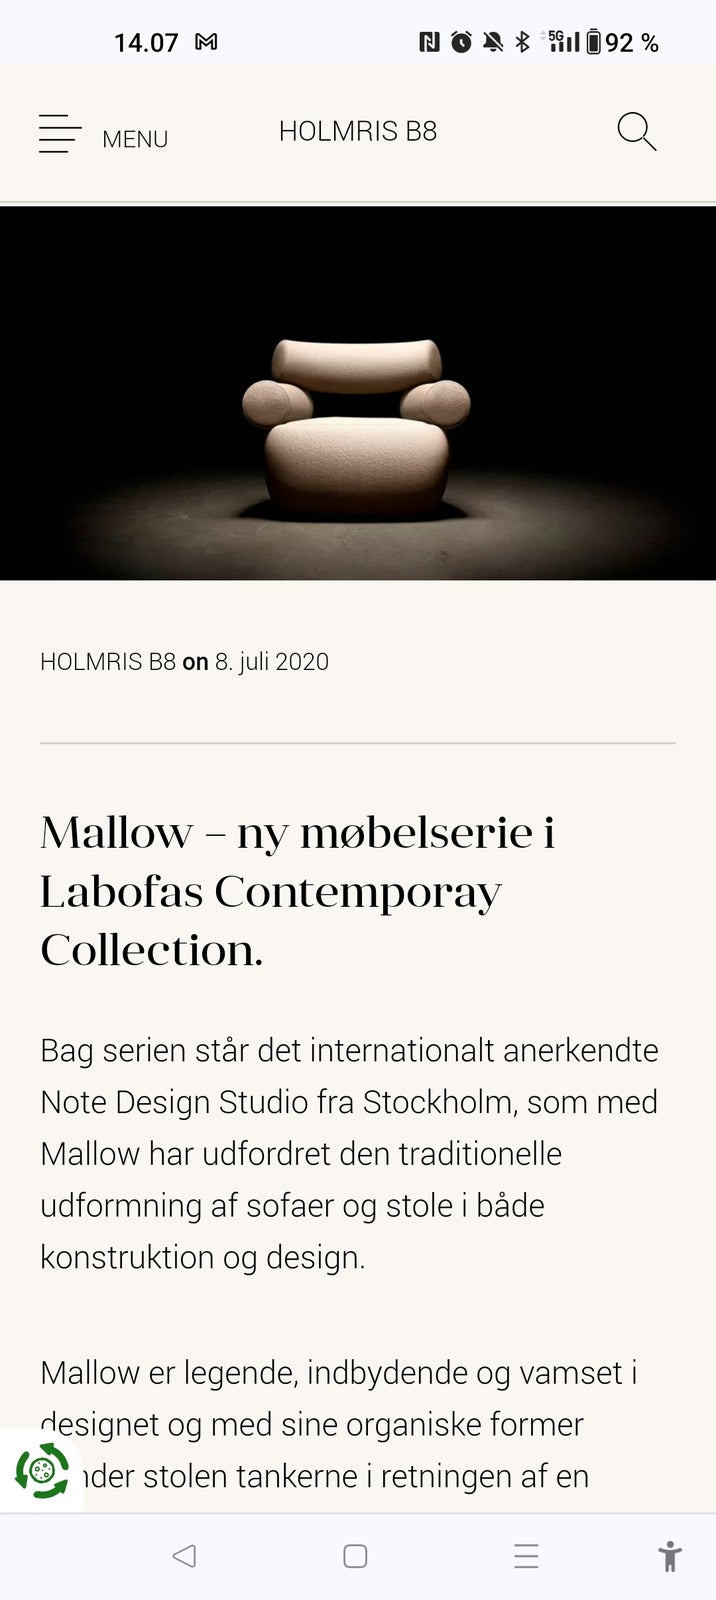 Anden arkitekt, Note Design Studio fra Stockholm, Stol +